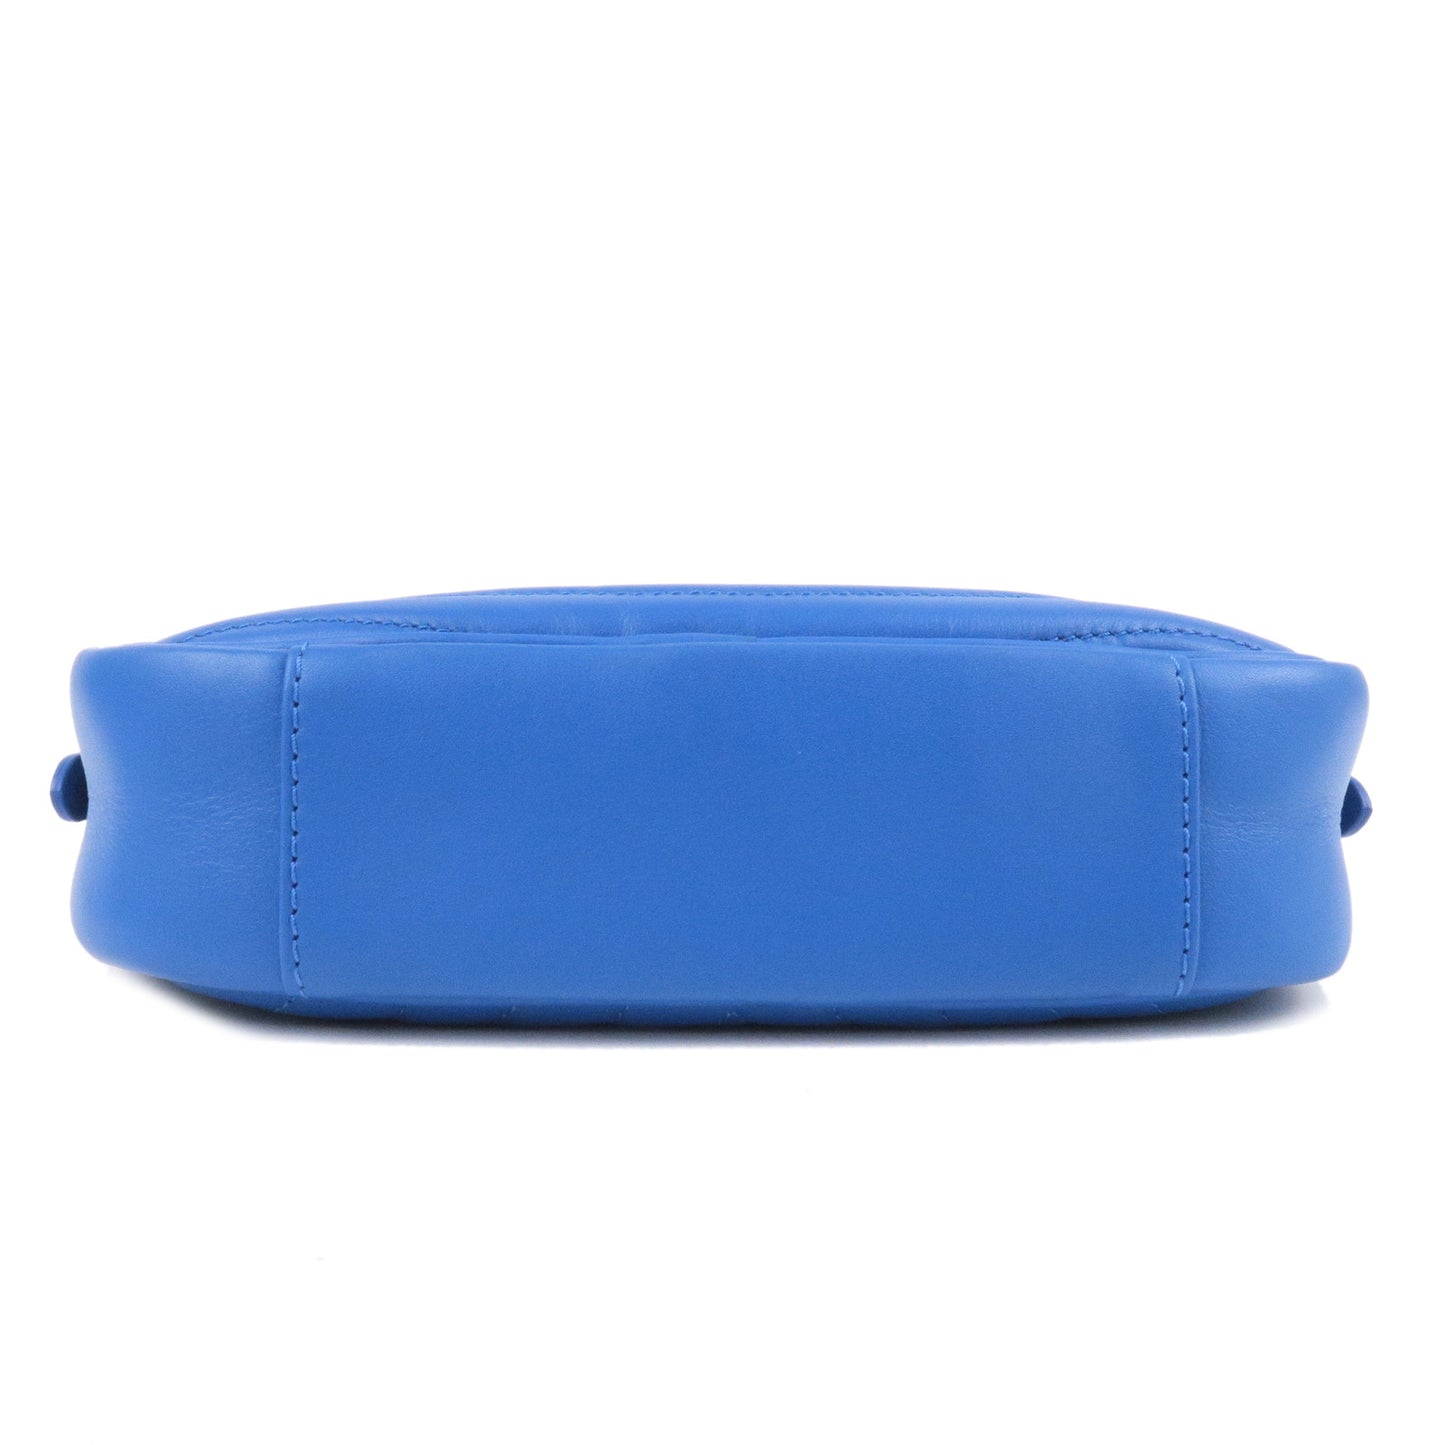 Louis Vuitton Wave Camera Bag Chain Shoulder Bag Blue M53901